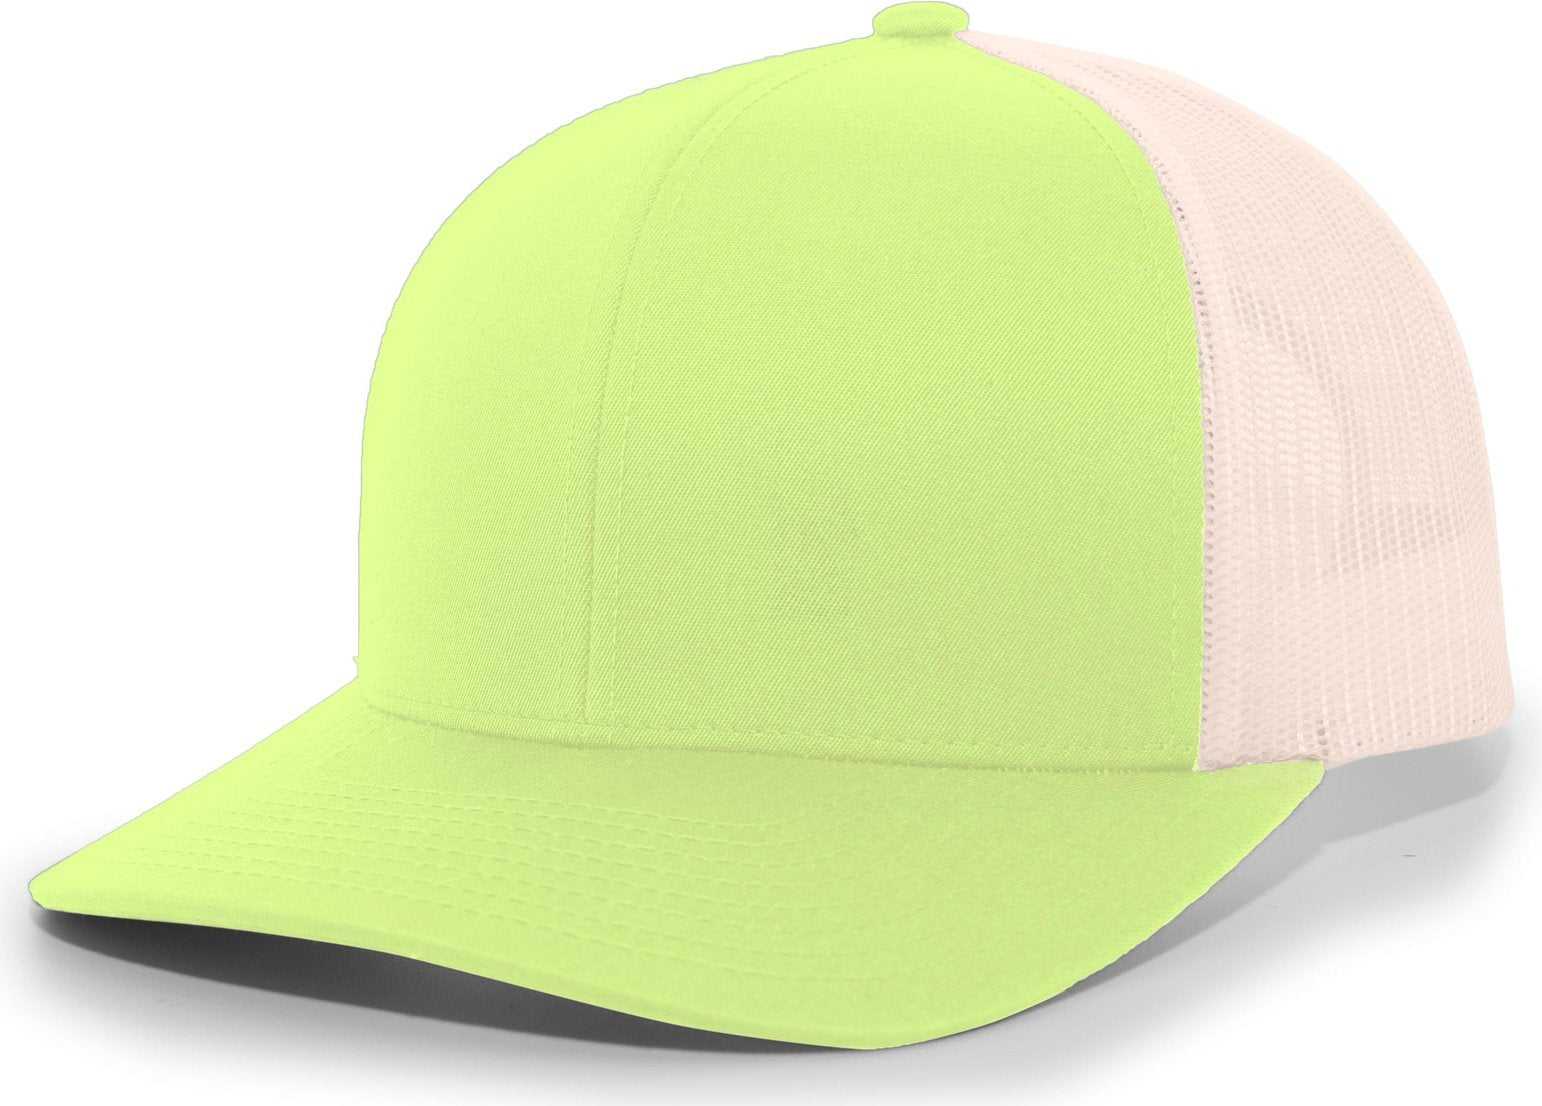 Pacific Headwear 104C Trucker Snapback Cap - Green Glow Beige - HIT a Double